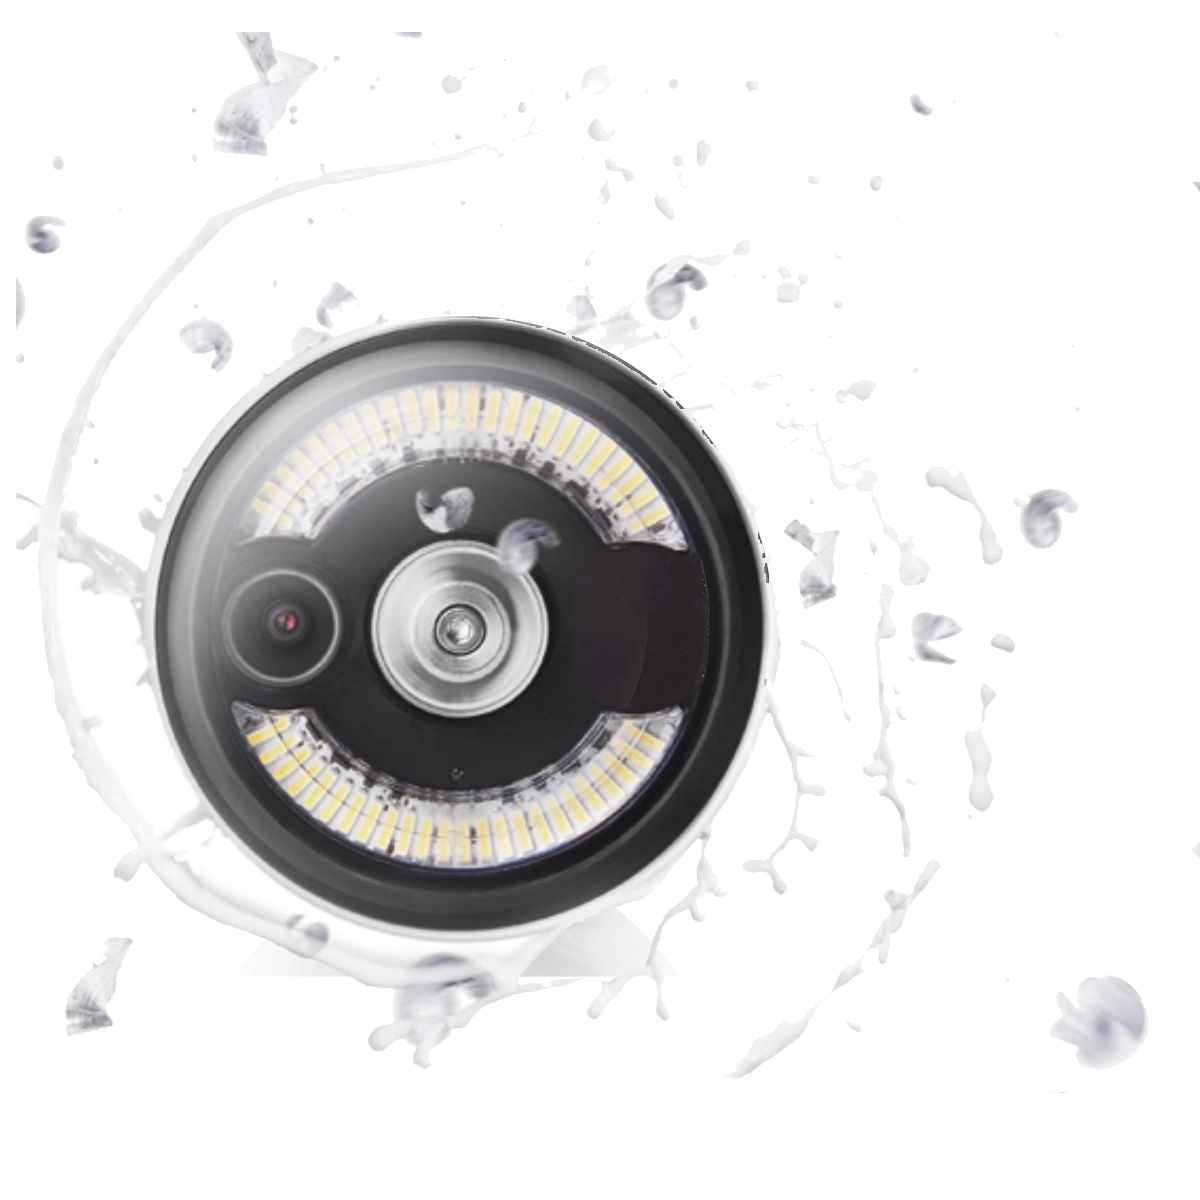 Rotoclear kamerafej száraz és nedves megmunkálásokhoz fejlesztve.